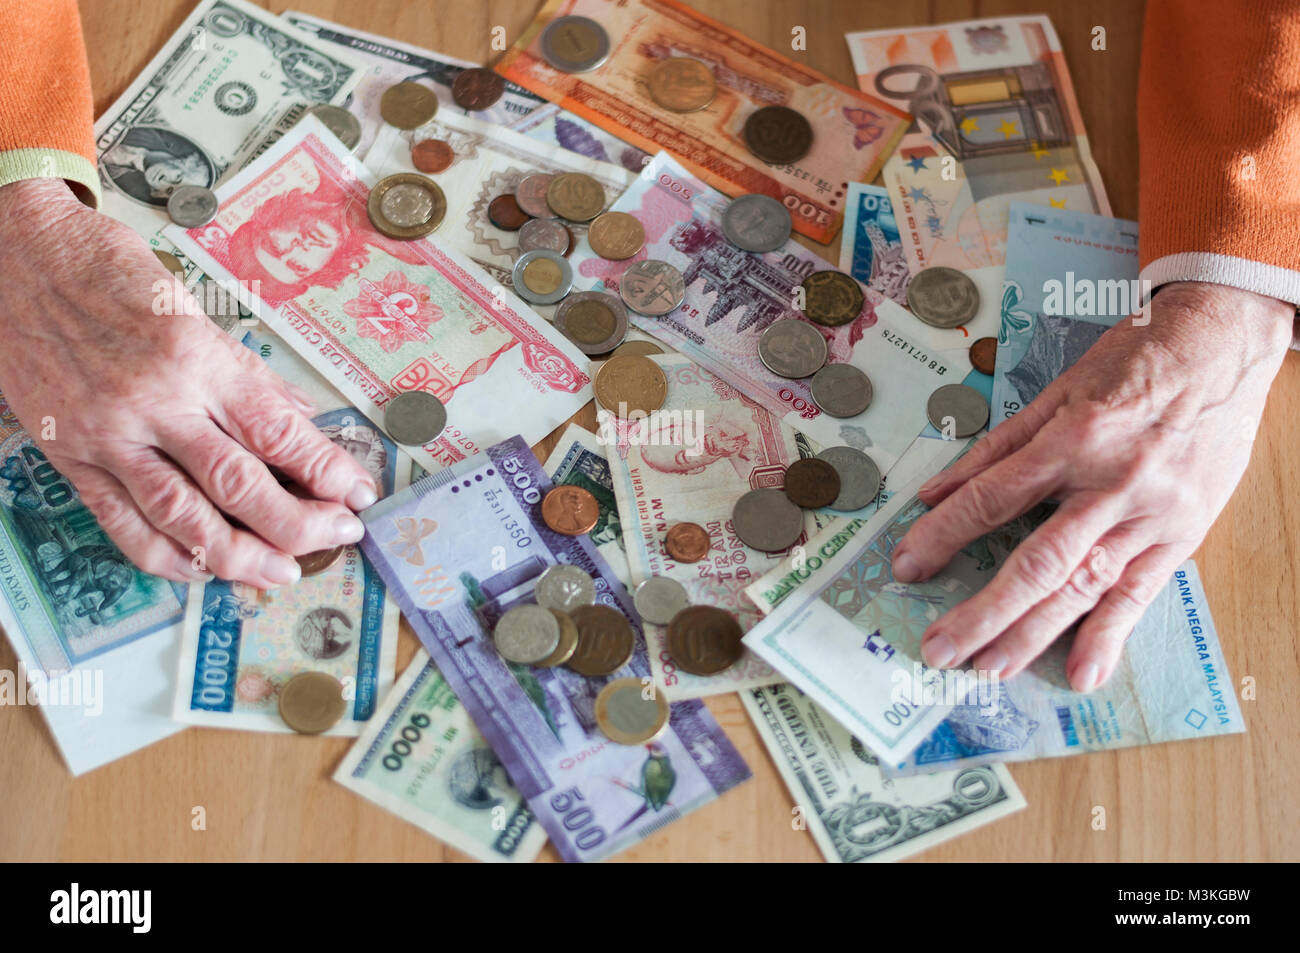 Haende von Seniorin mit verschiedene Geldscheine und Muenzen auf einem Tisch. Foto Stock